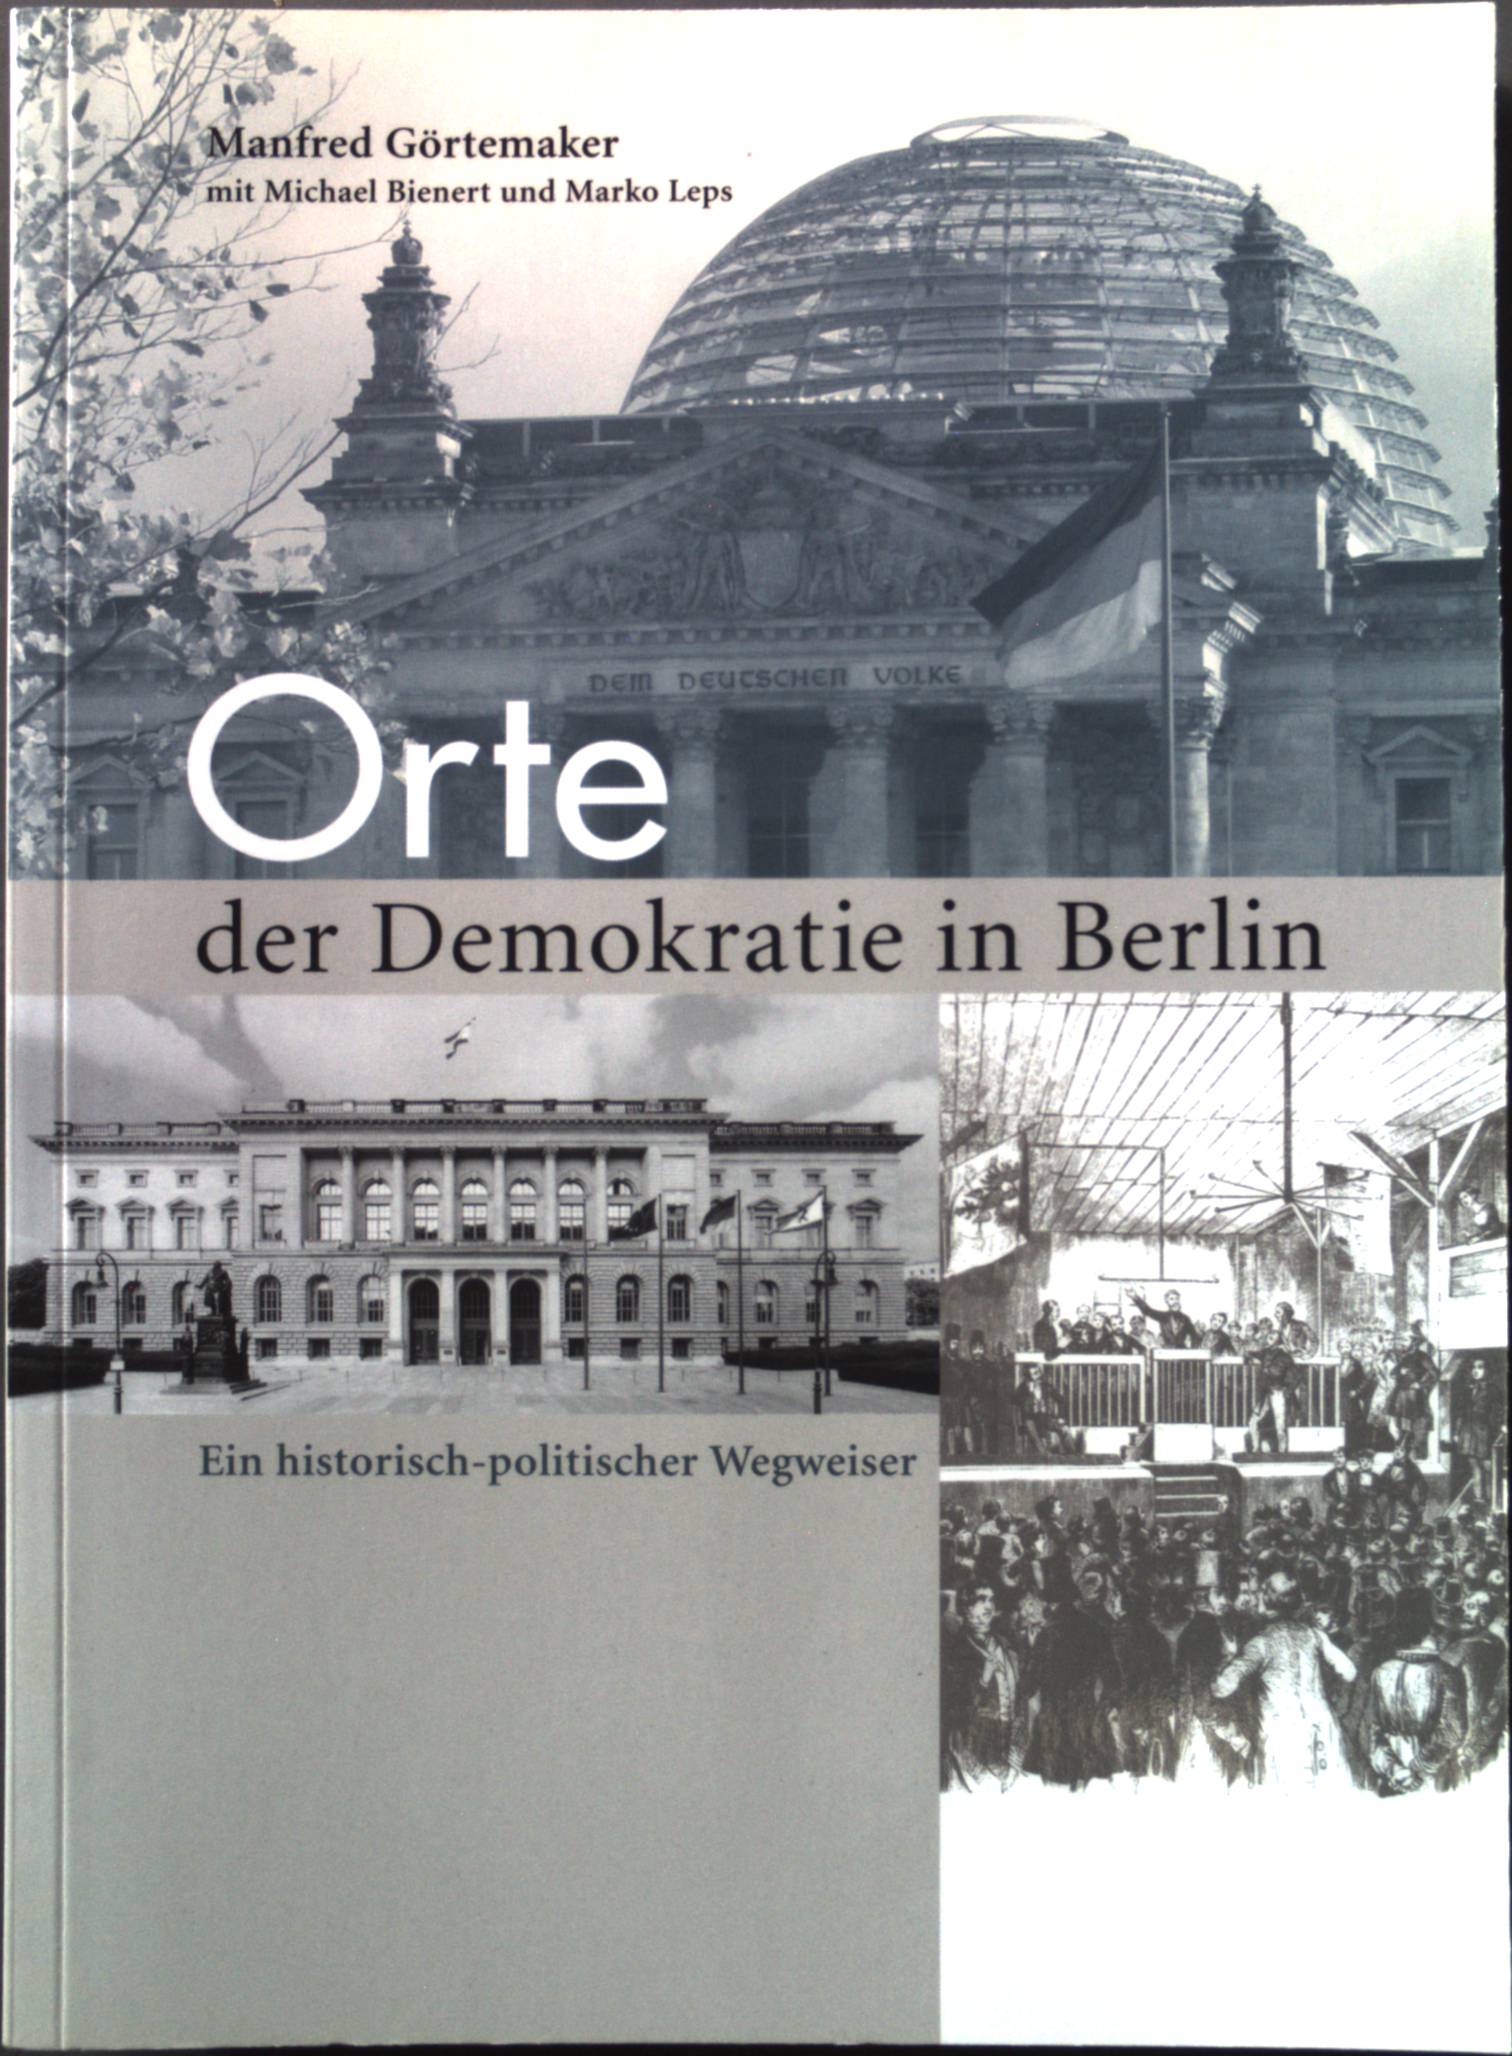 Orte der Demokratie in Berlin: Ein historisch-politischer Wegweiser - Görtemaker, Manfred, Michael Bienert und Marko Leps